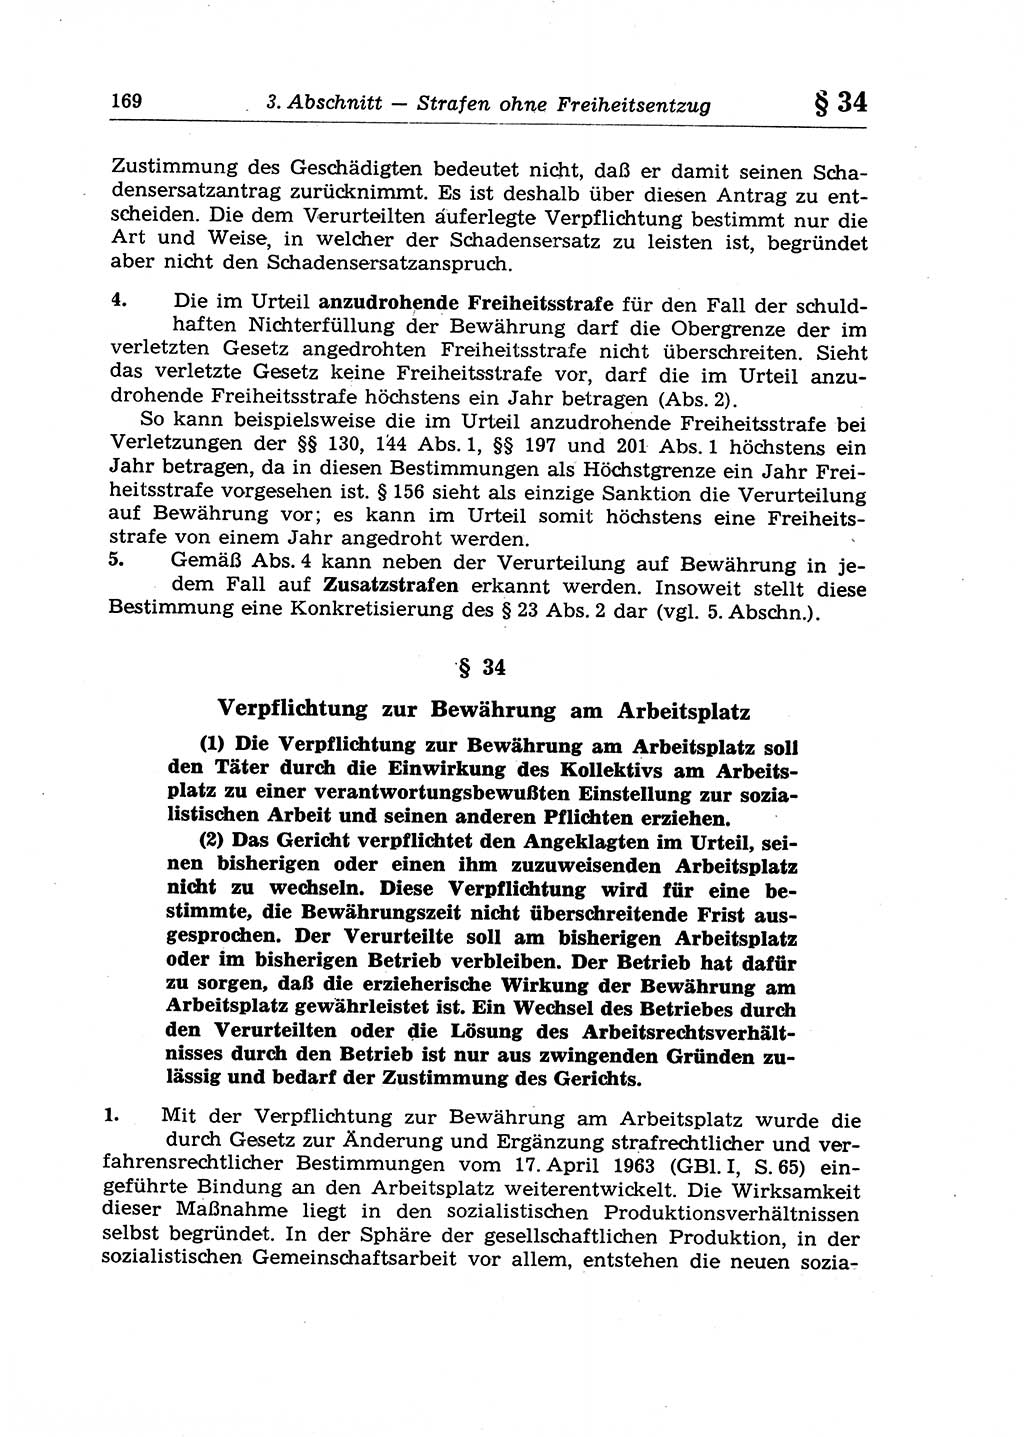 Strafrecht der Deutschen Demokratischen Republik (DDR), Lehrkommentar zum Strafgesetzbuch (StGB), Allgemeiner Teil 1970, Seite 169 (Strafr. DDR Lehrkomm. StGB AT 1970, S. 169)